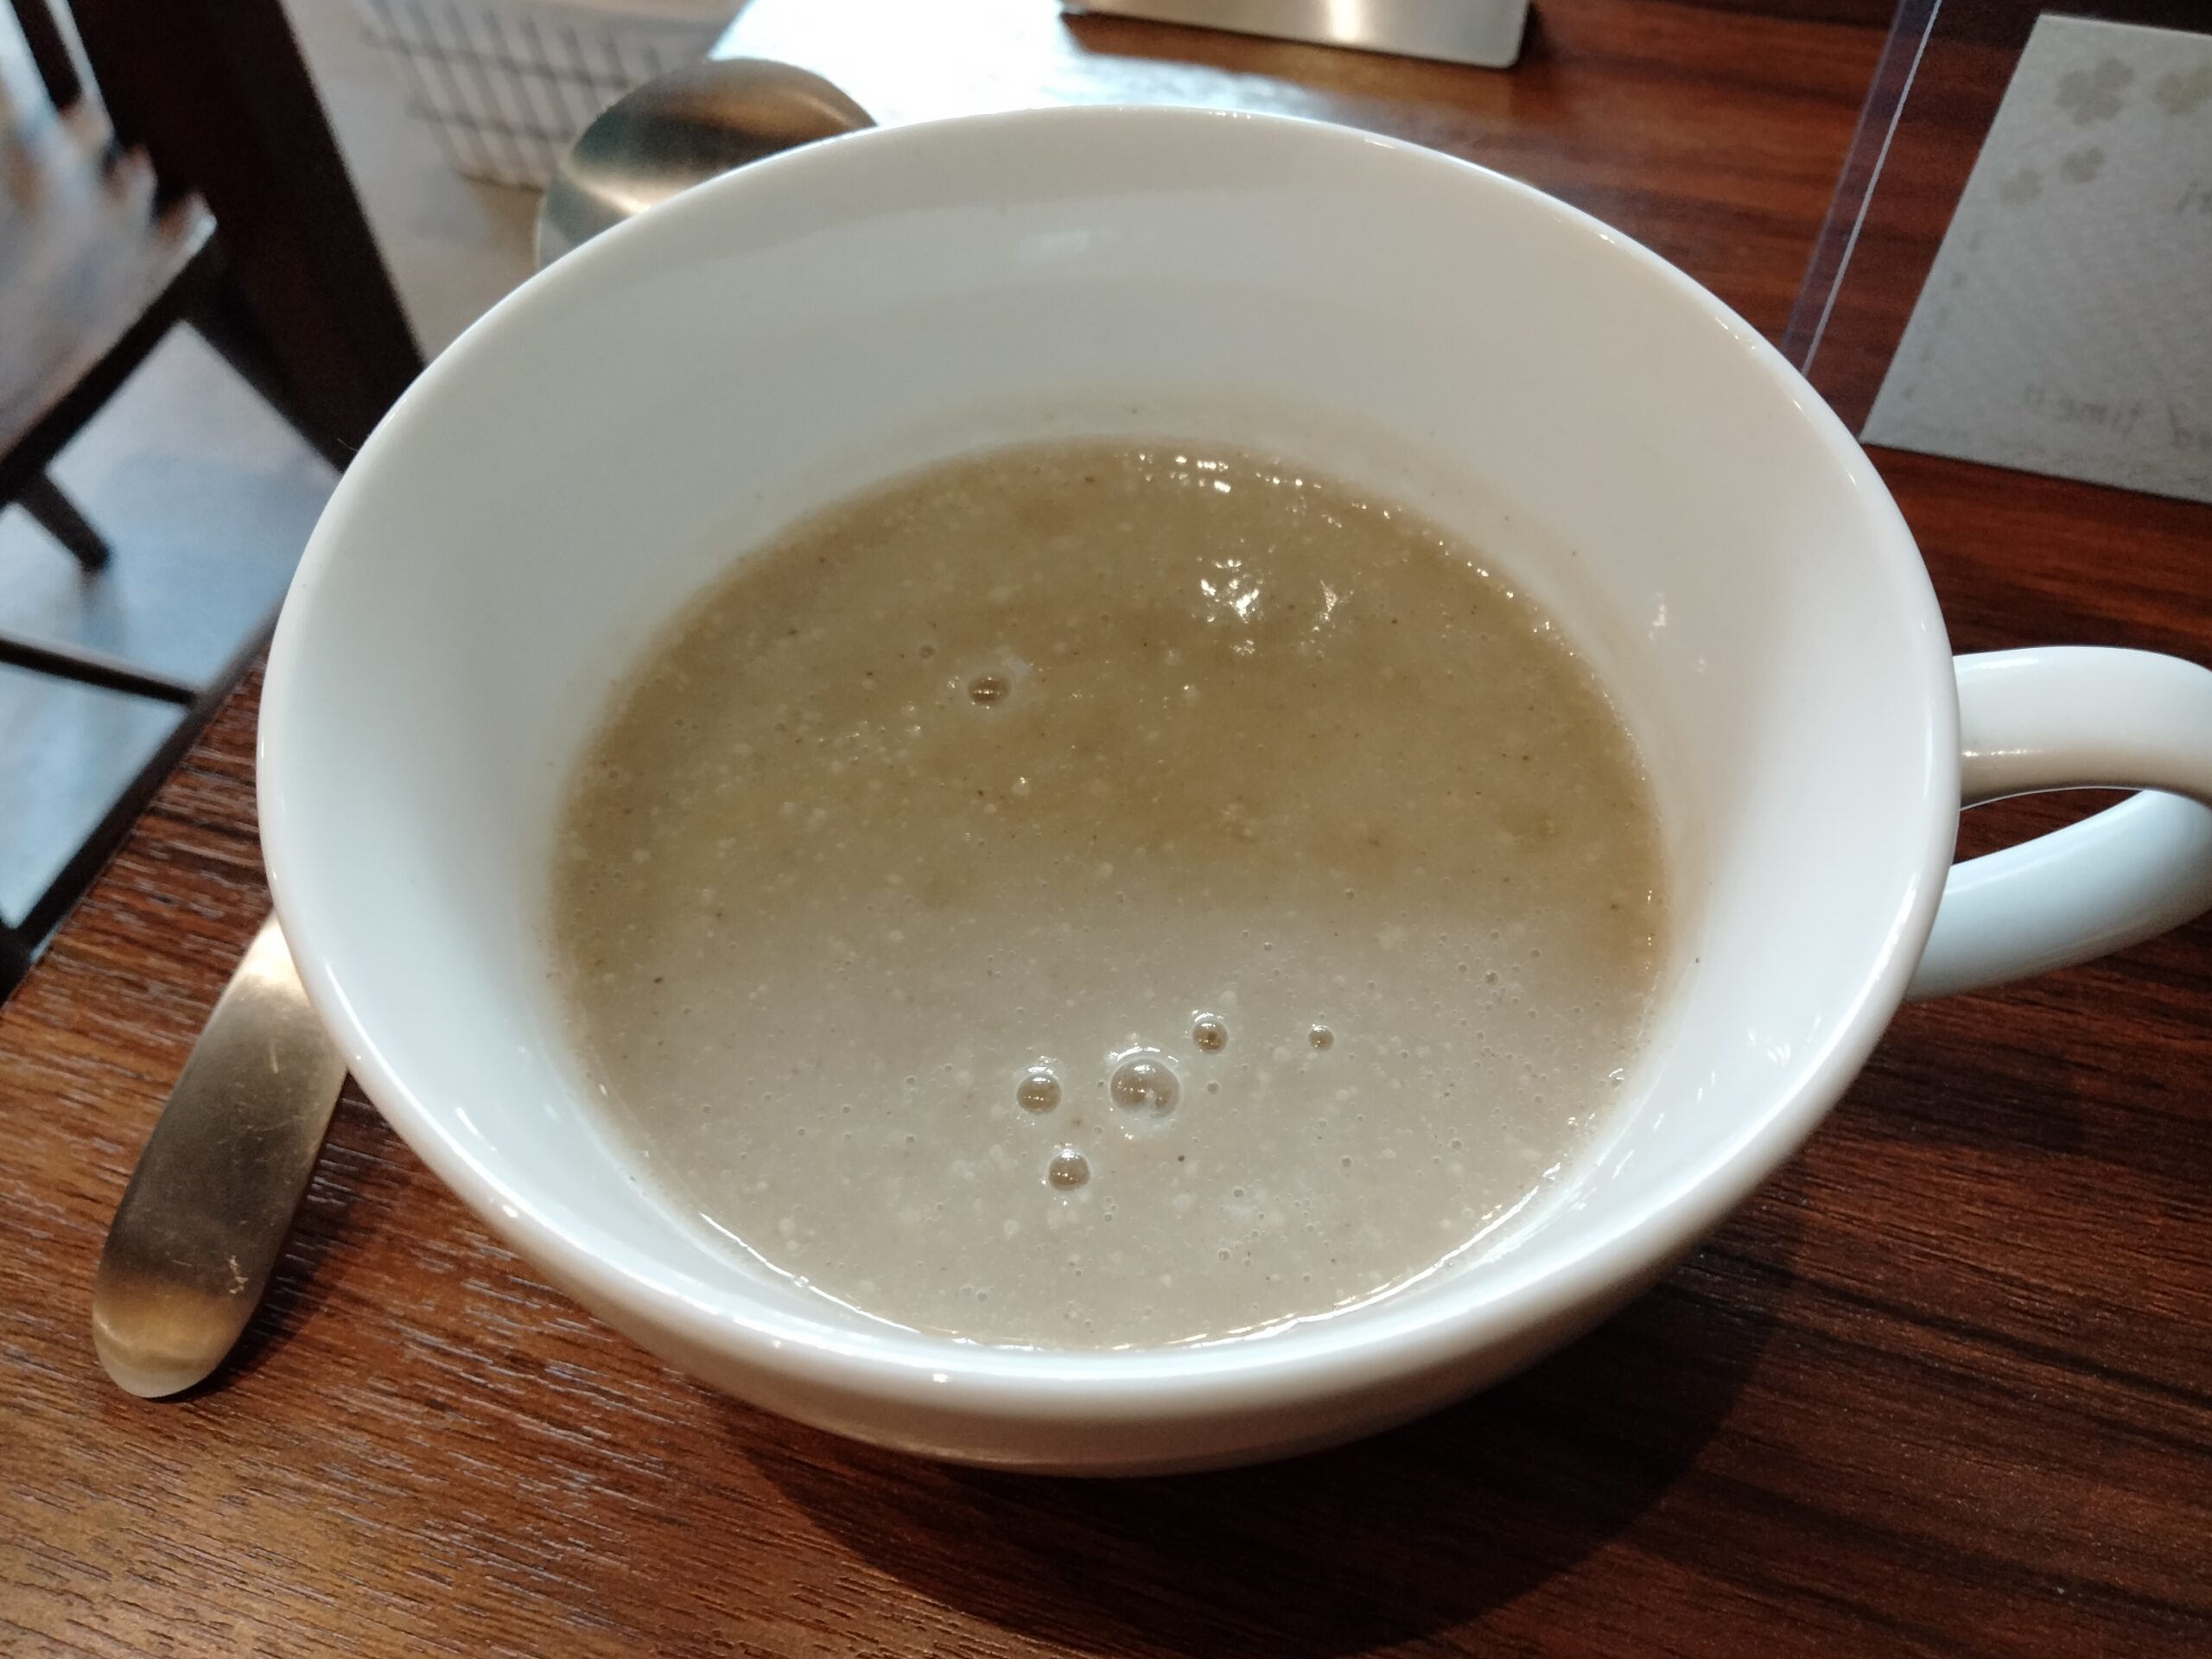 スープ付き Came with soup